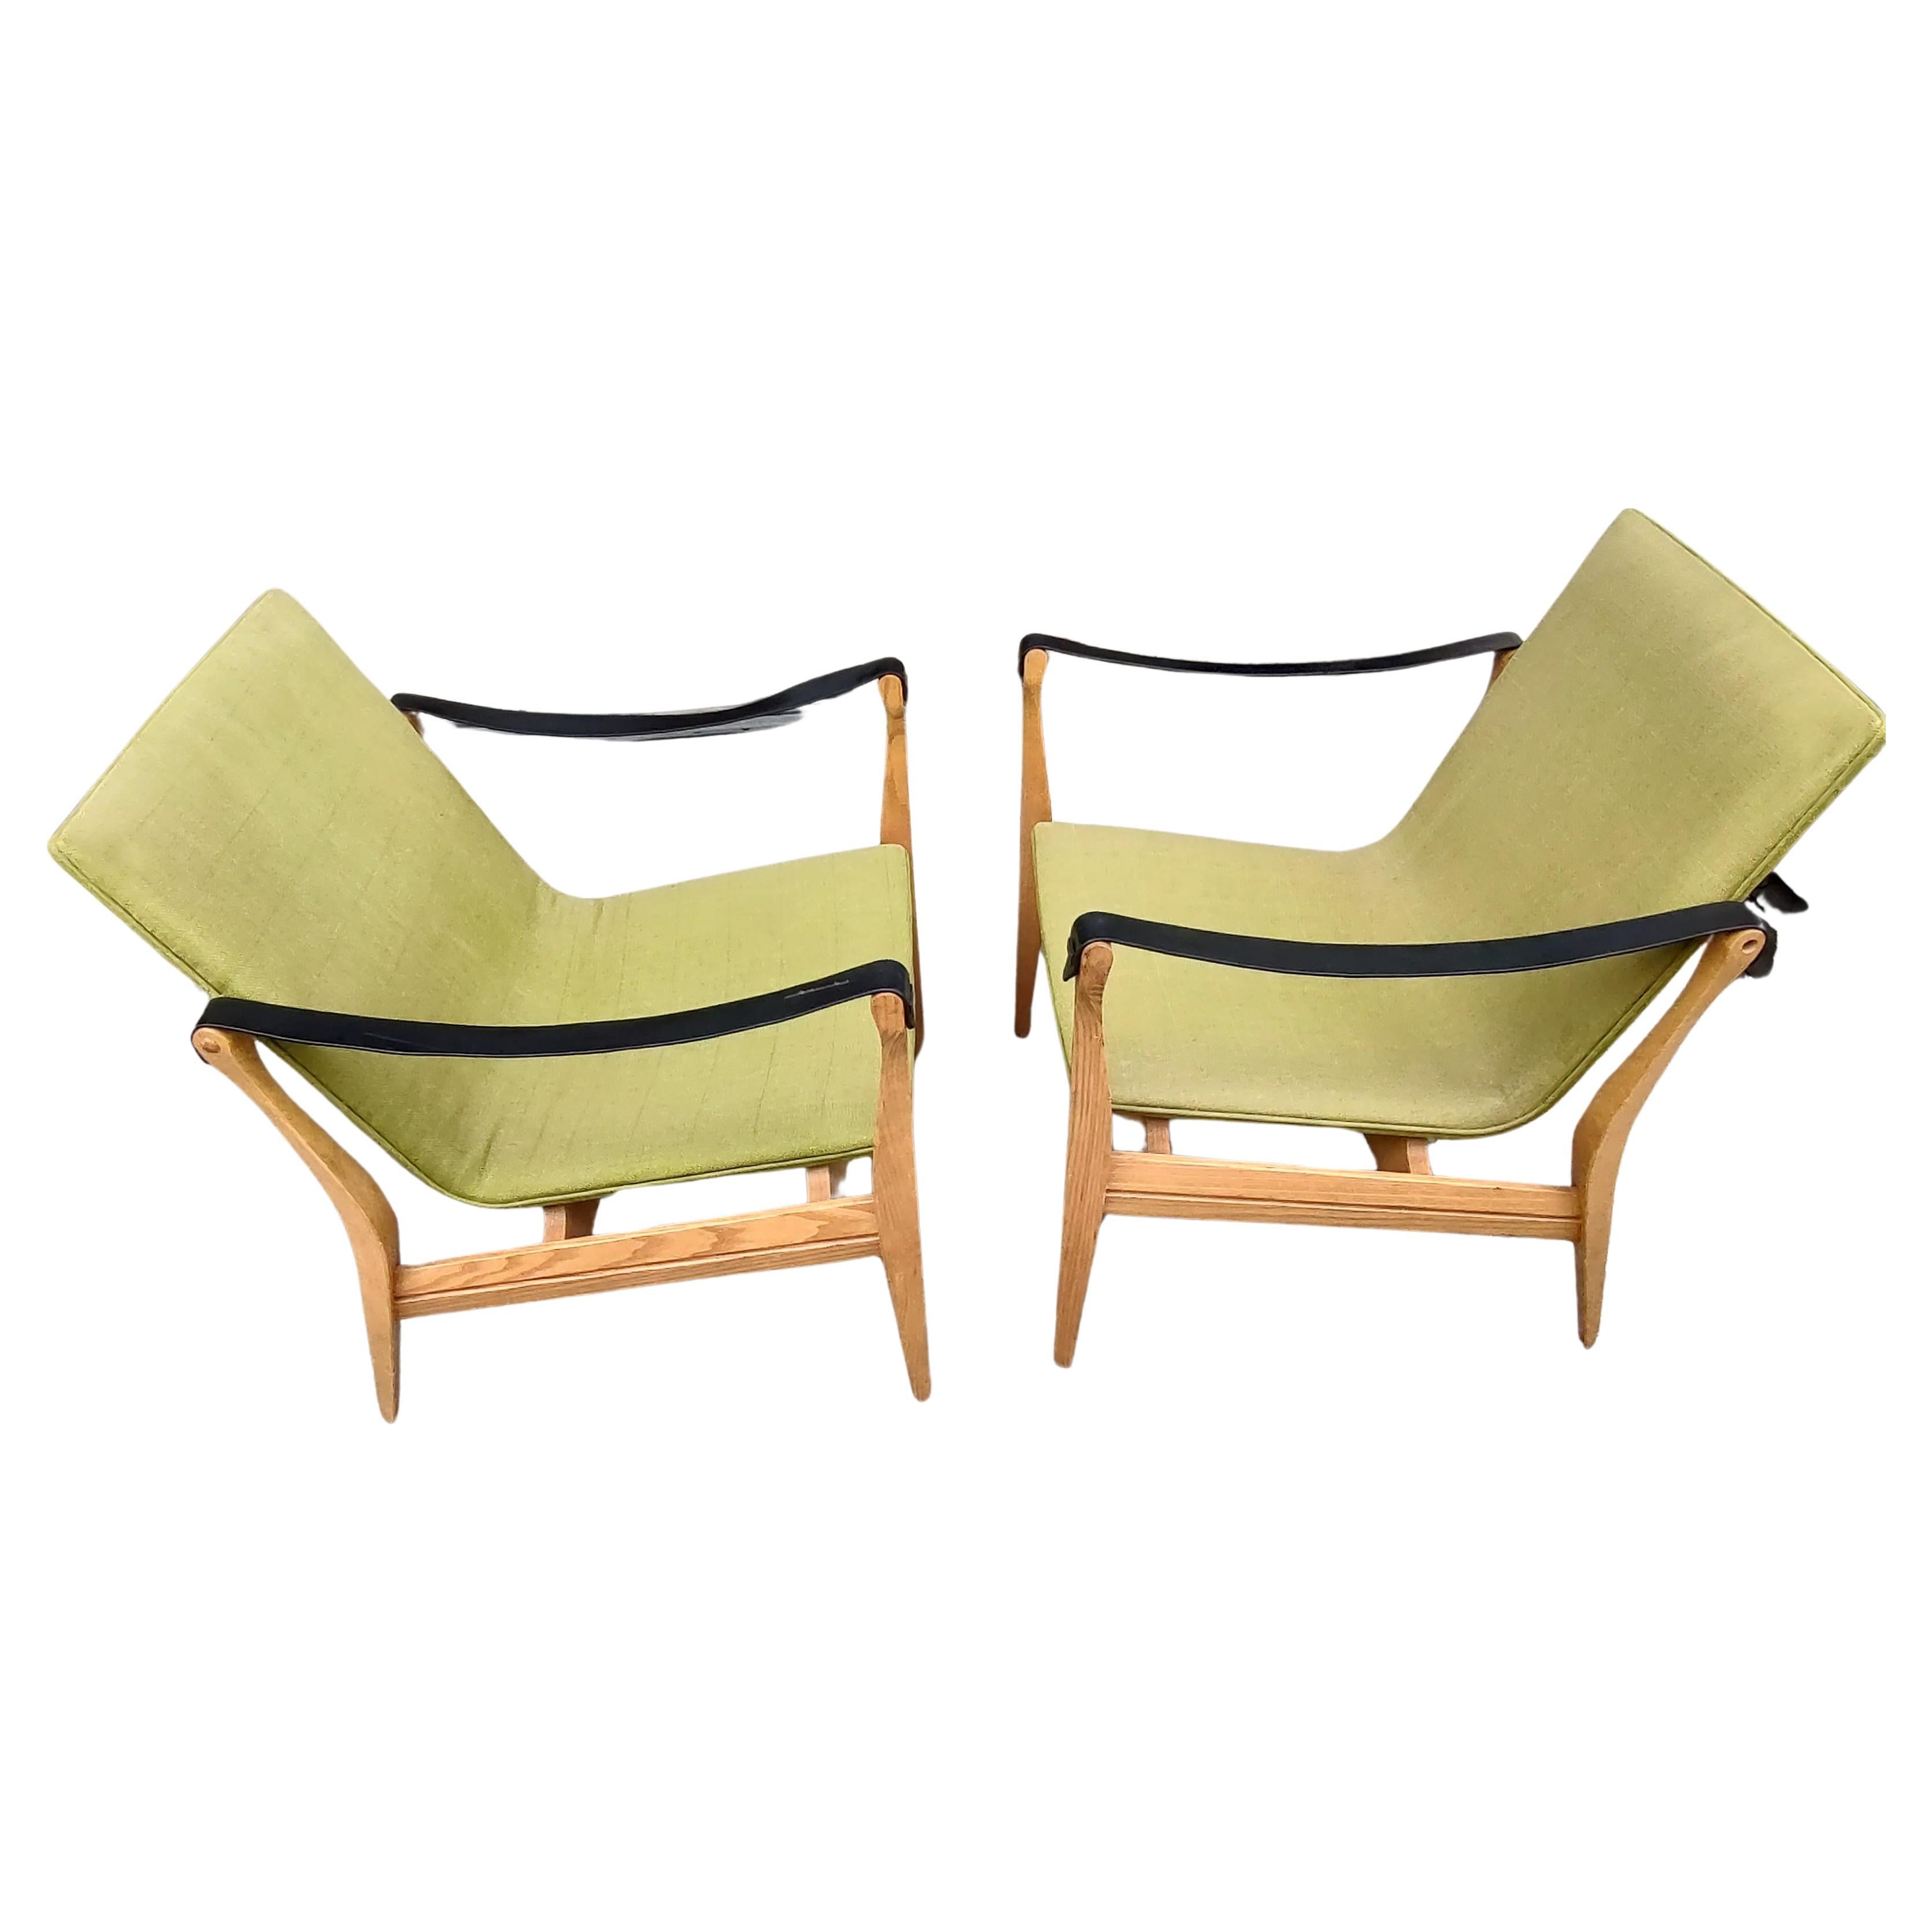 Mid-20th Century Pair of Mid-Century Modern Safari Chairs by Karen & Ebbe Clemmensen 4 Hansen For Sale